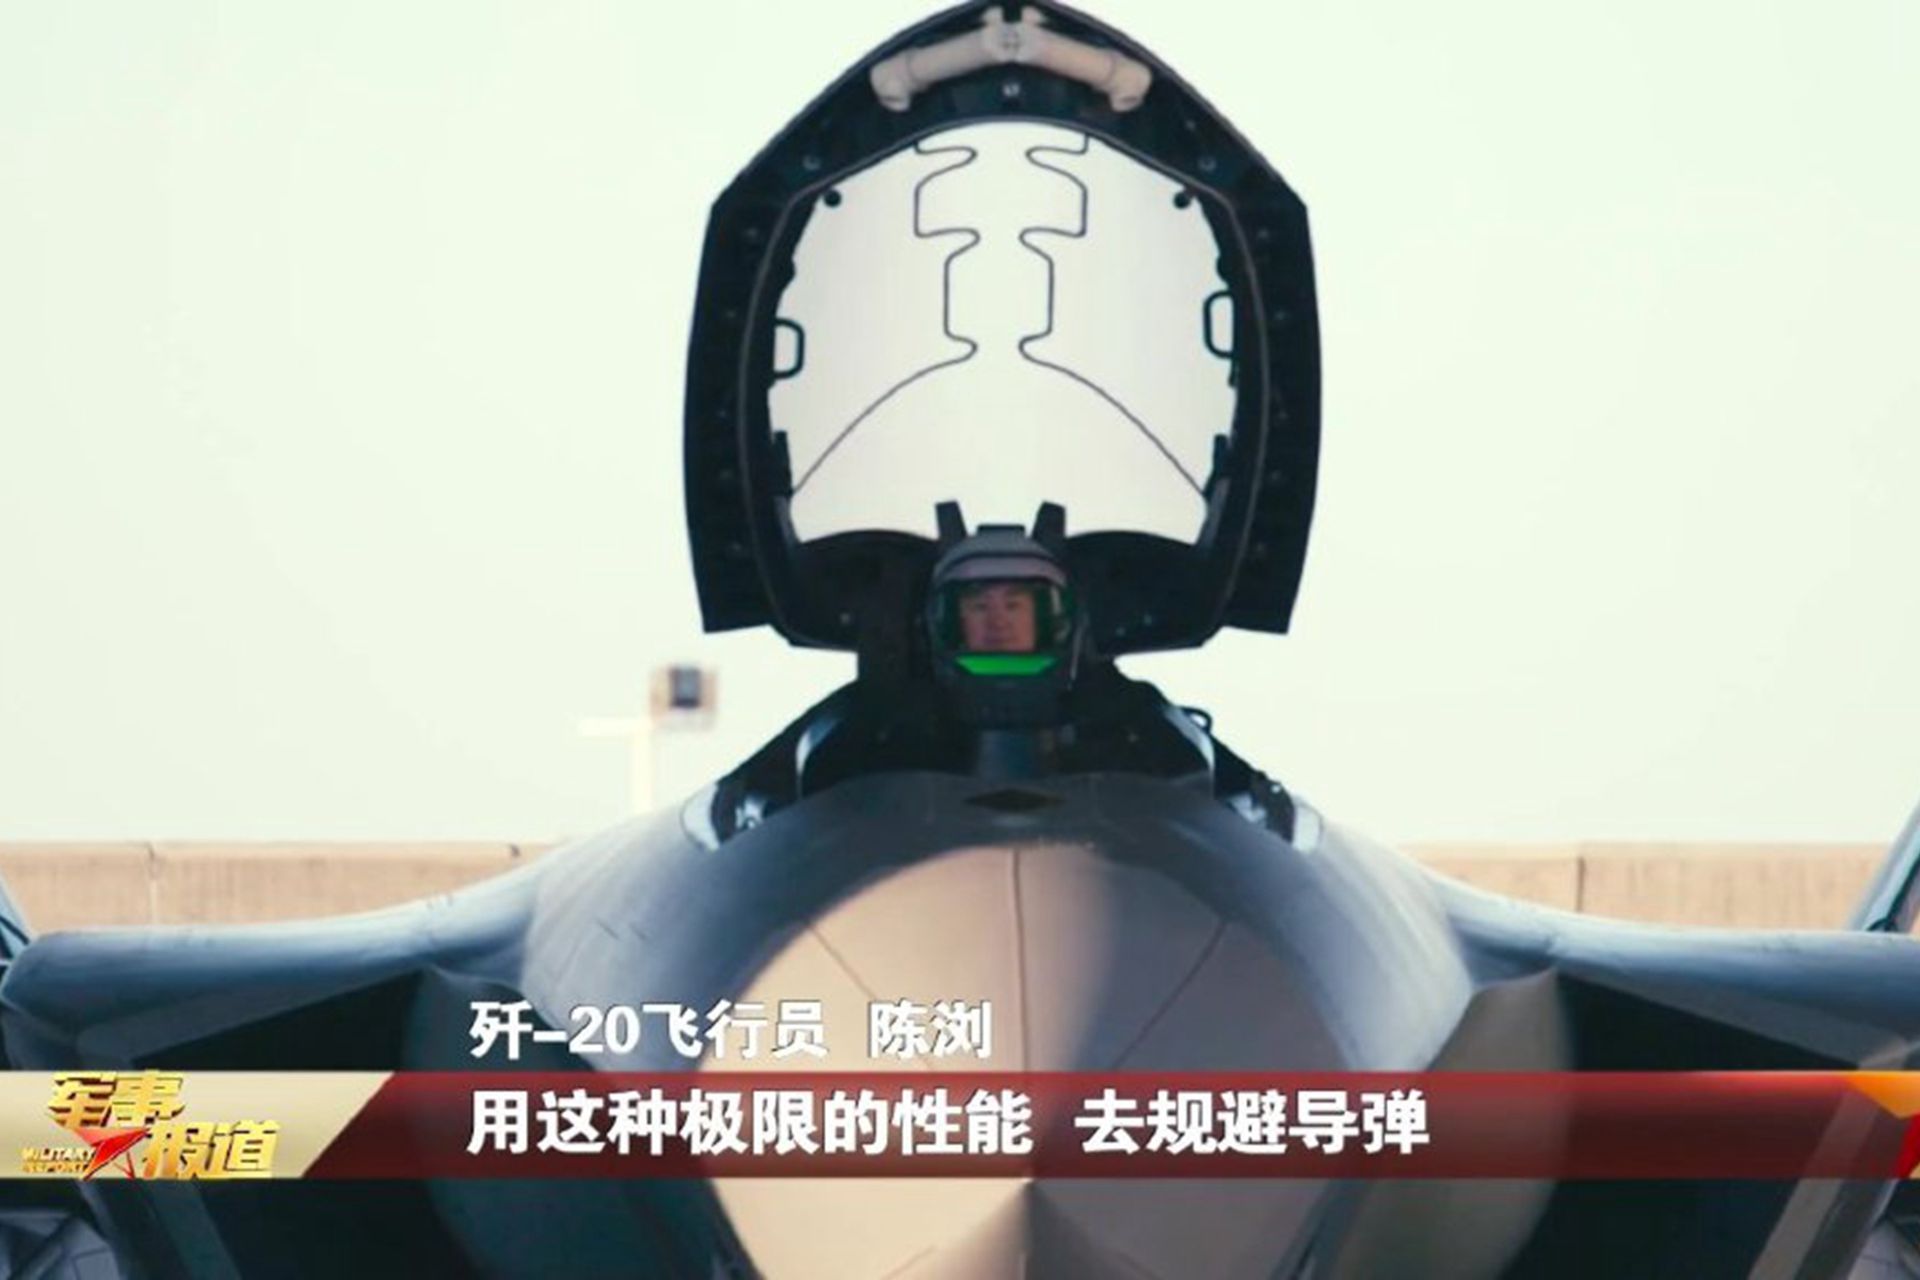 中国央视披露歼-20最新照。图为歼-20座舱盖启动，驾驶员已待命。（中国央视军事截图）